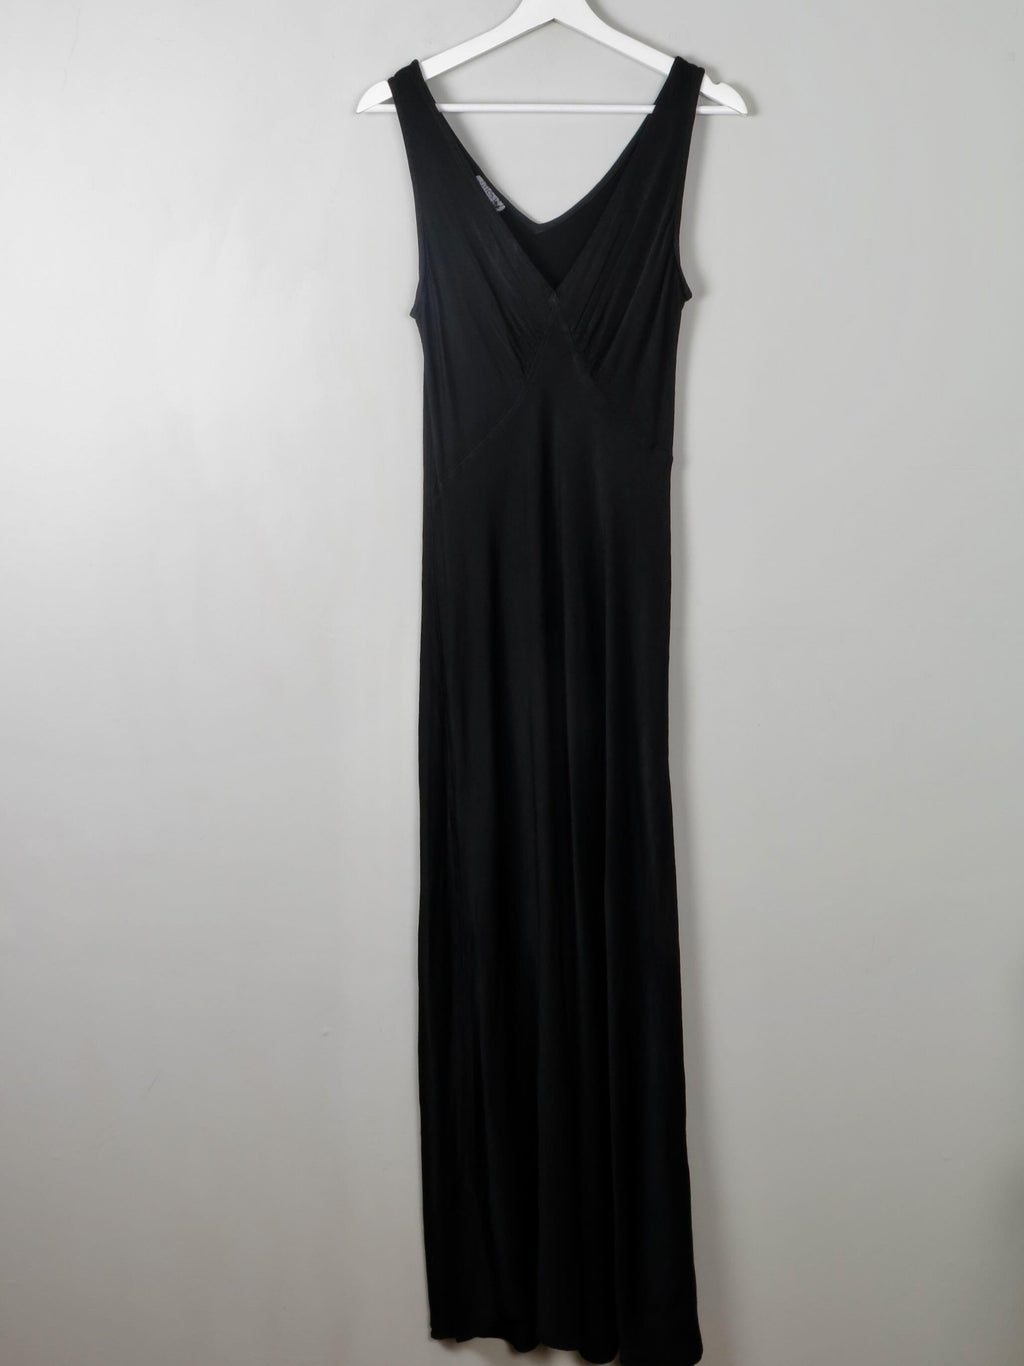 Vintage Black Satin Ghost Dress M - The Harlequin